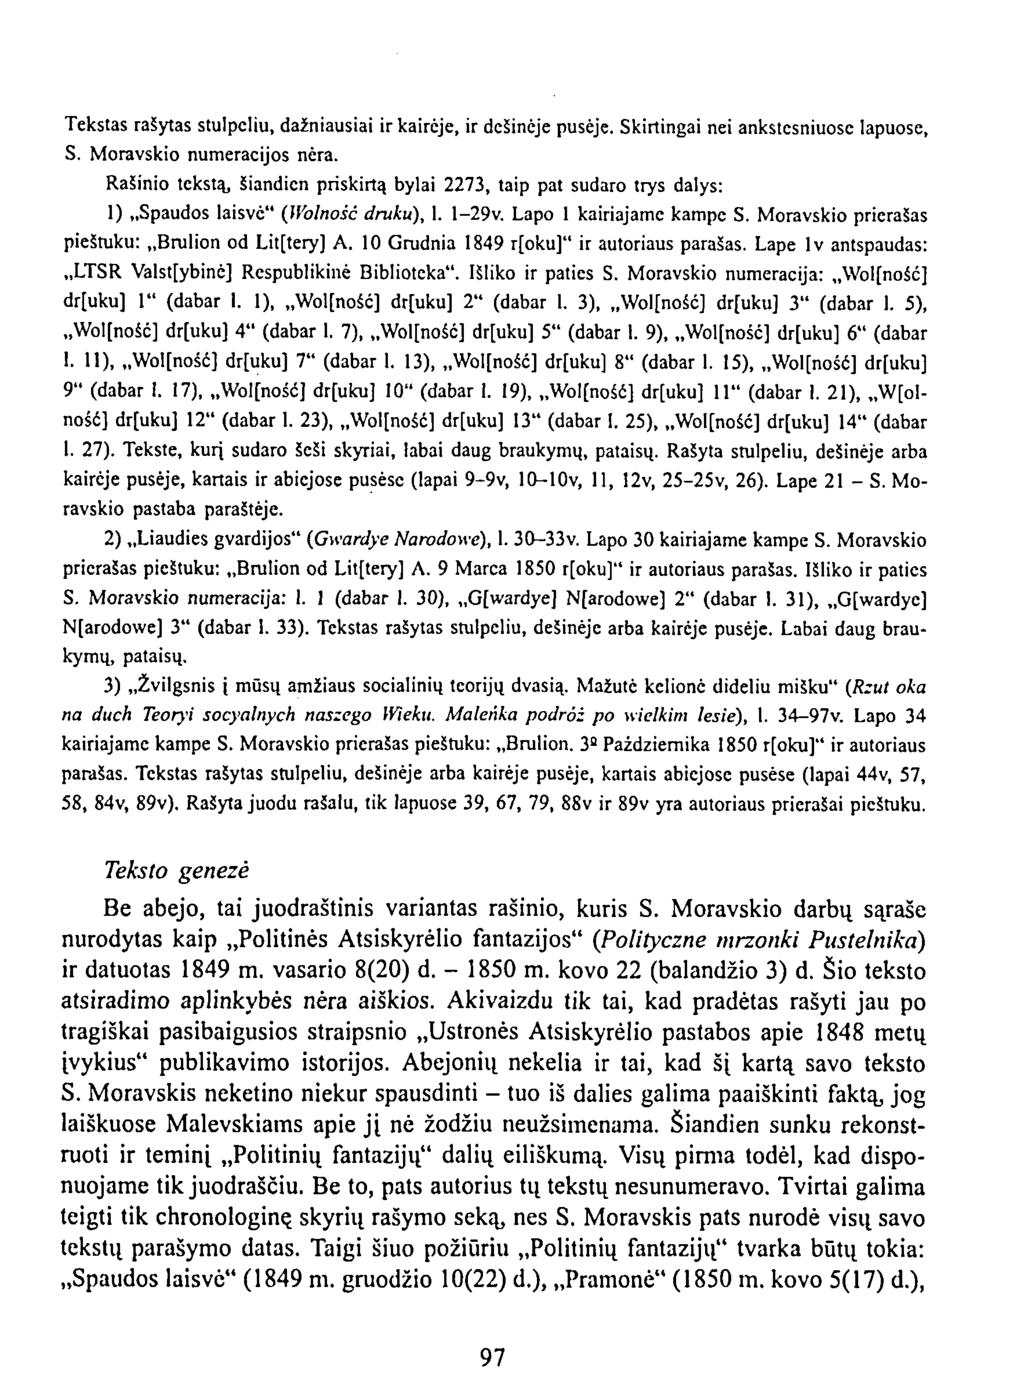 Tekstas rašytas stulpeliu, dažniausiai ir kairėje, ir dešinėje pusėje. Skirtingai nei ankstesniuose lapuose, S. Moravskio numeracijos nėra.